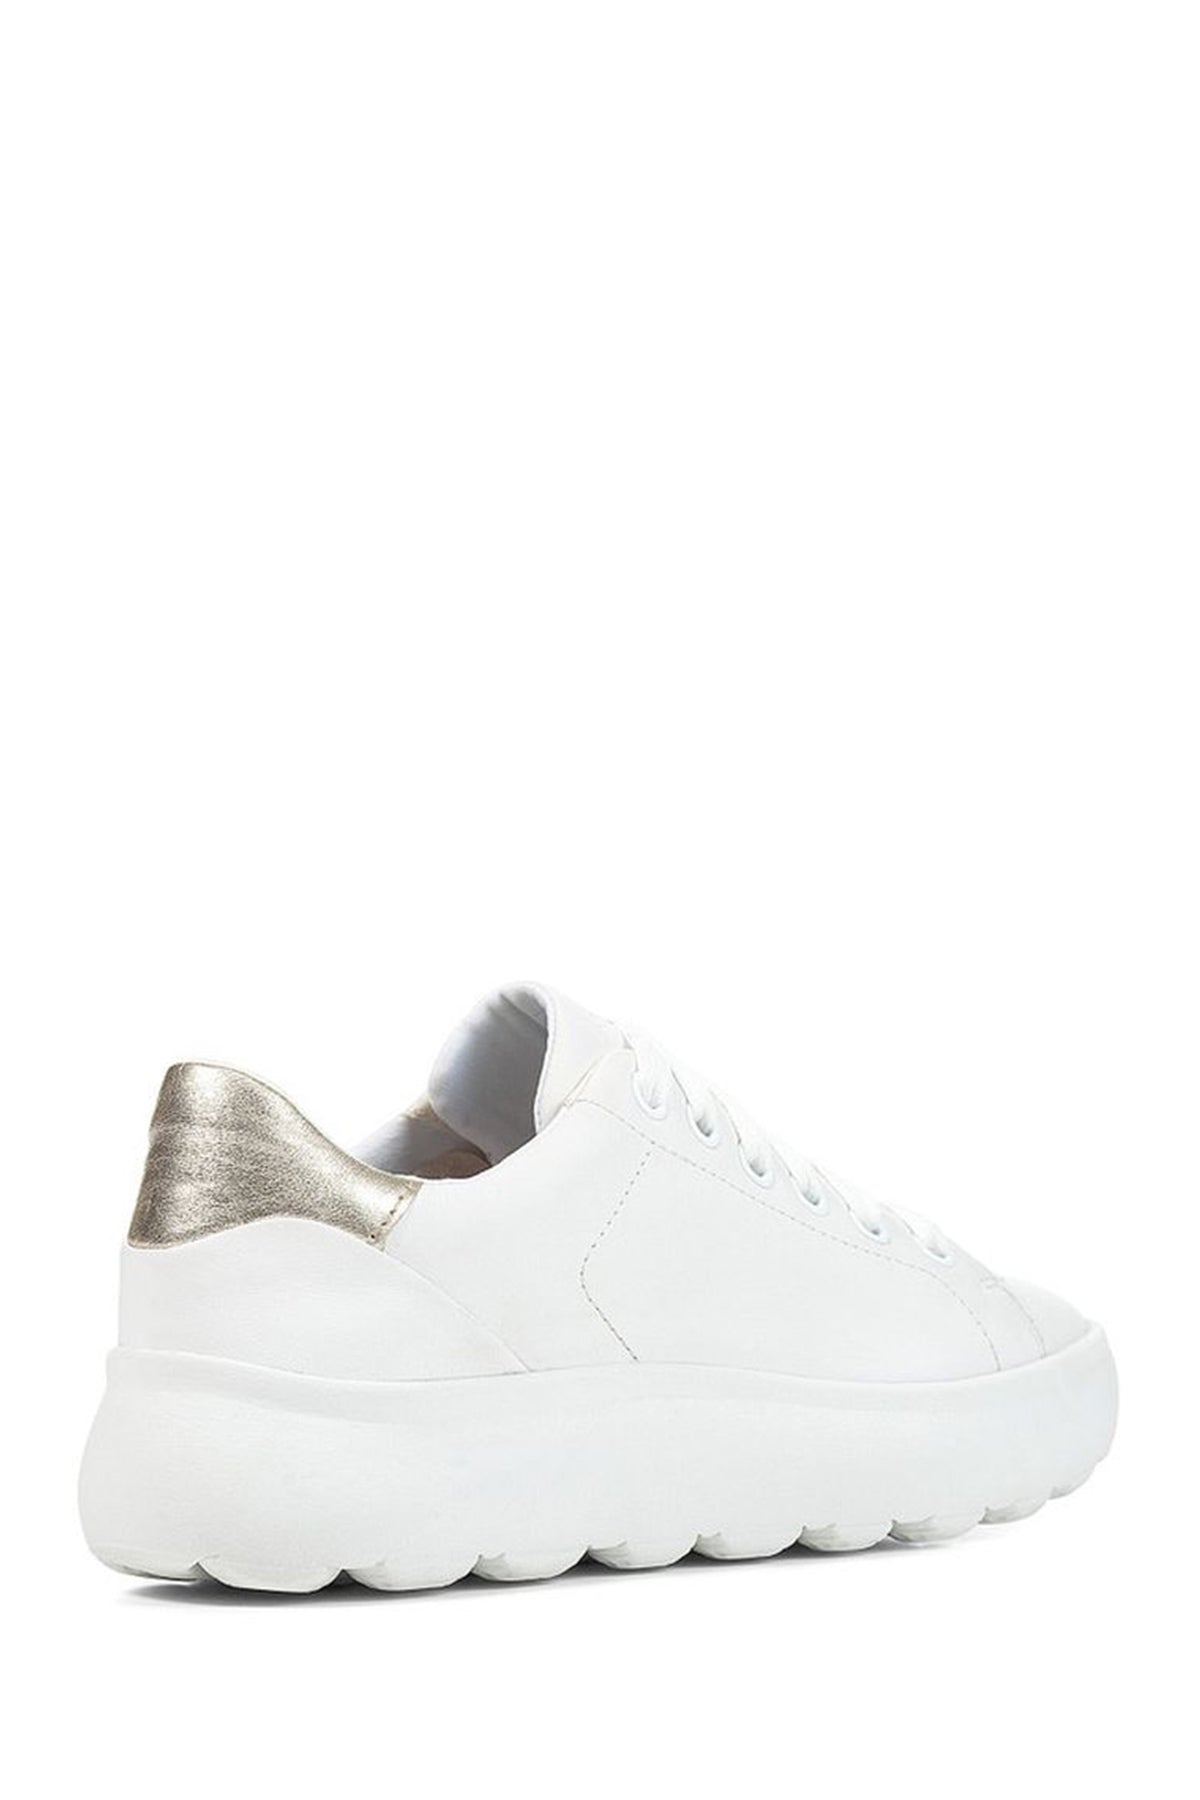 Geox Kadın Beyaz Spherica Ec4.1 Deri Bağcıklı Sneaker